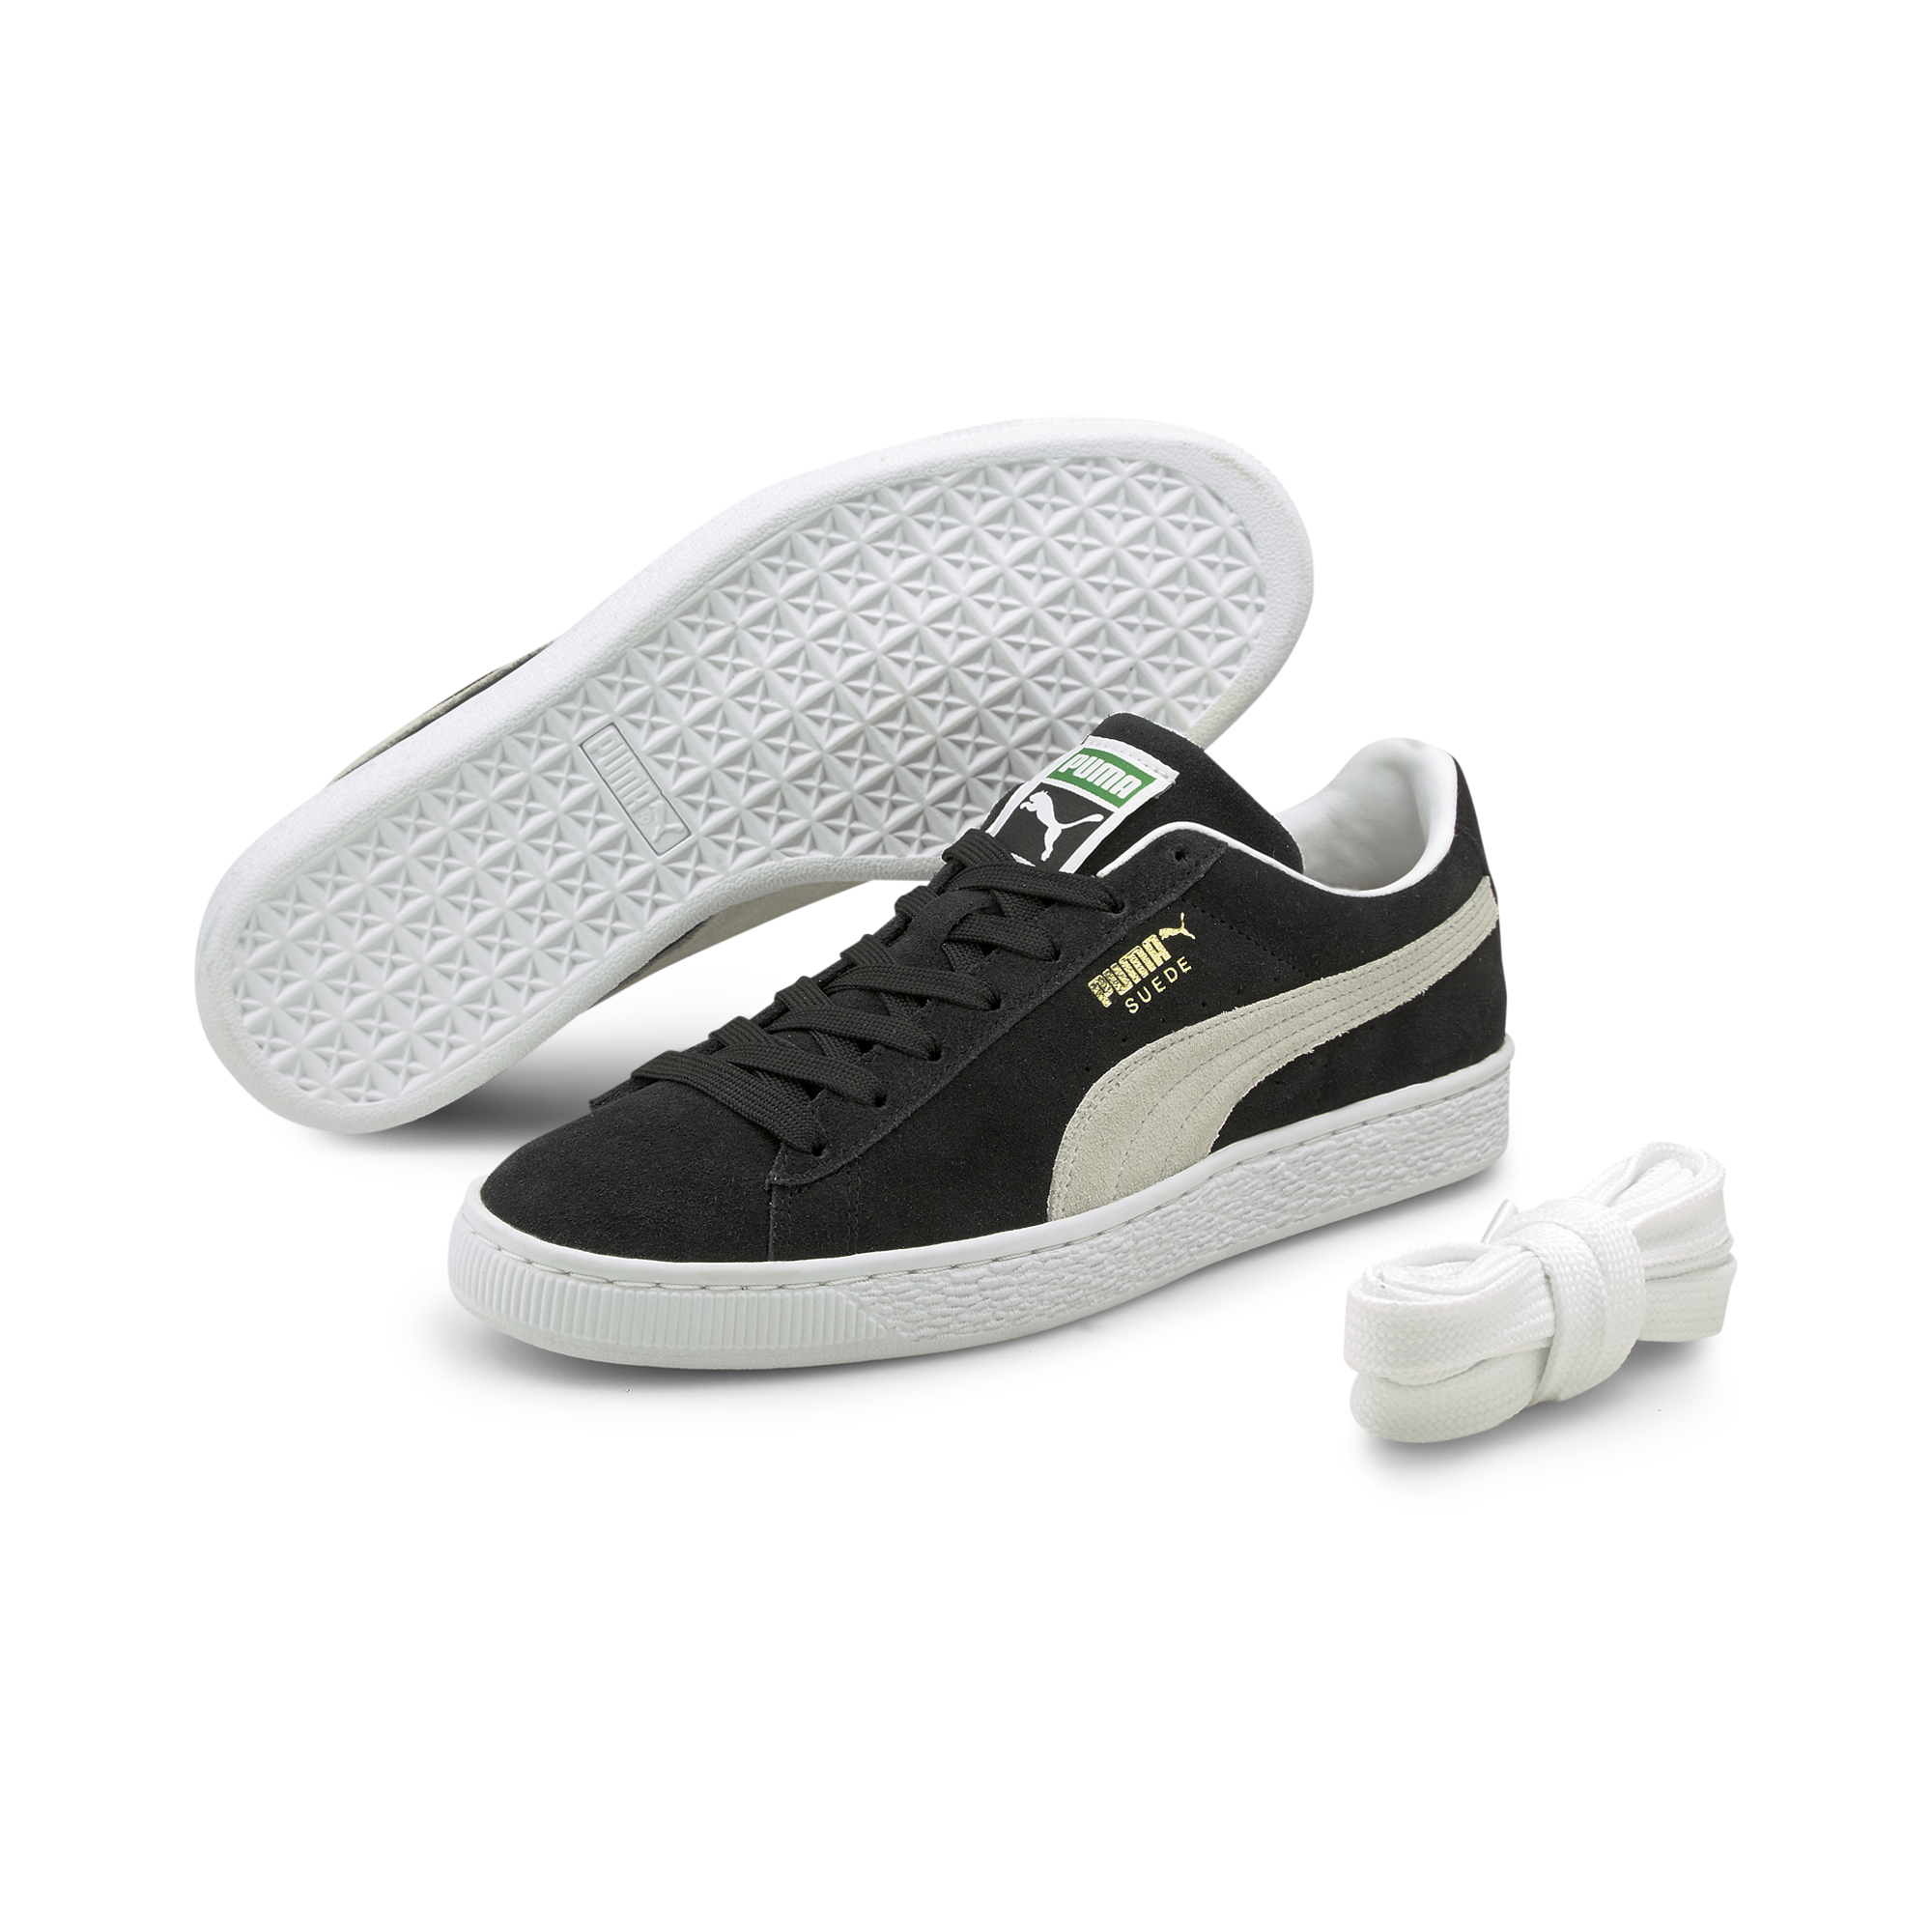  Suede Classic Xxi Sneakers, Sort/Hvid, 44.5